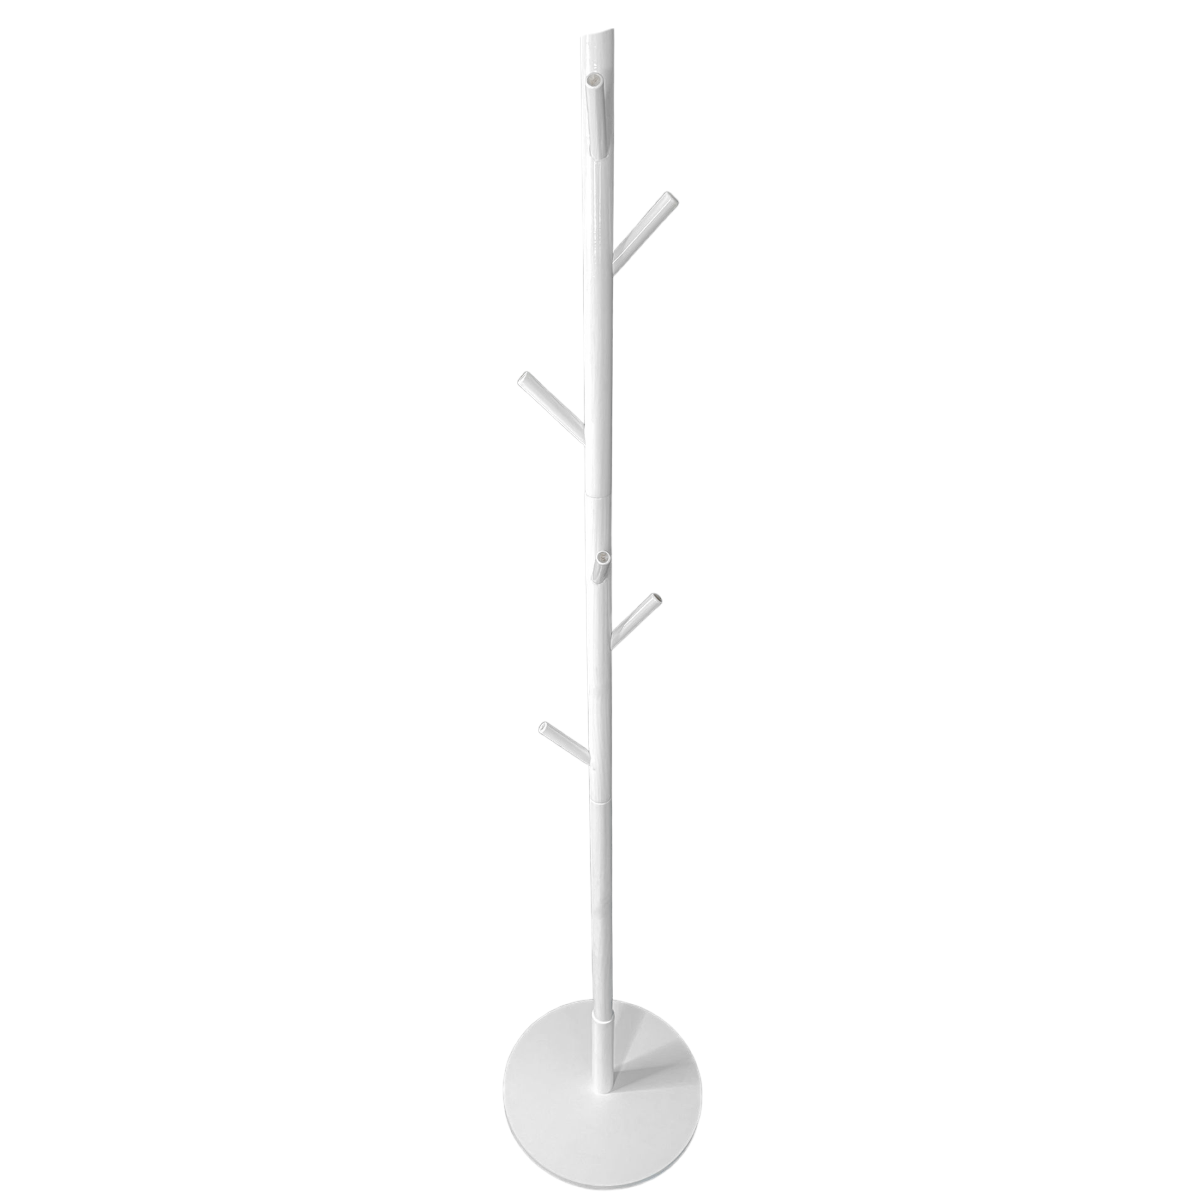 Cuiere si stative - Cuier tip pom cu 8 agatatori, 175 x 3.7 cm, pentru hol, alb, buz.ro